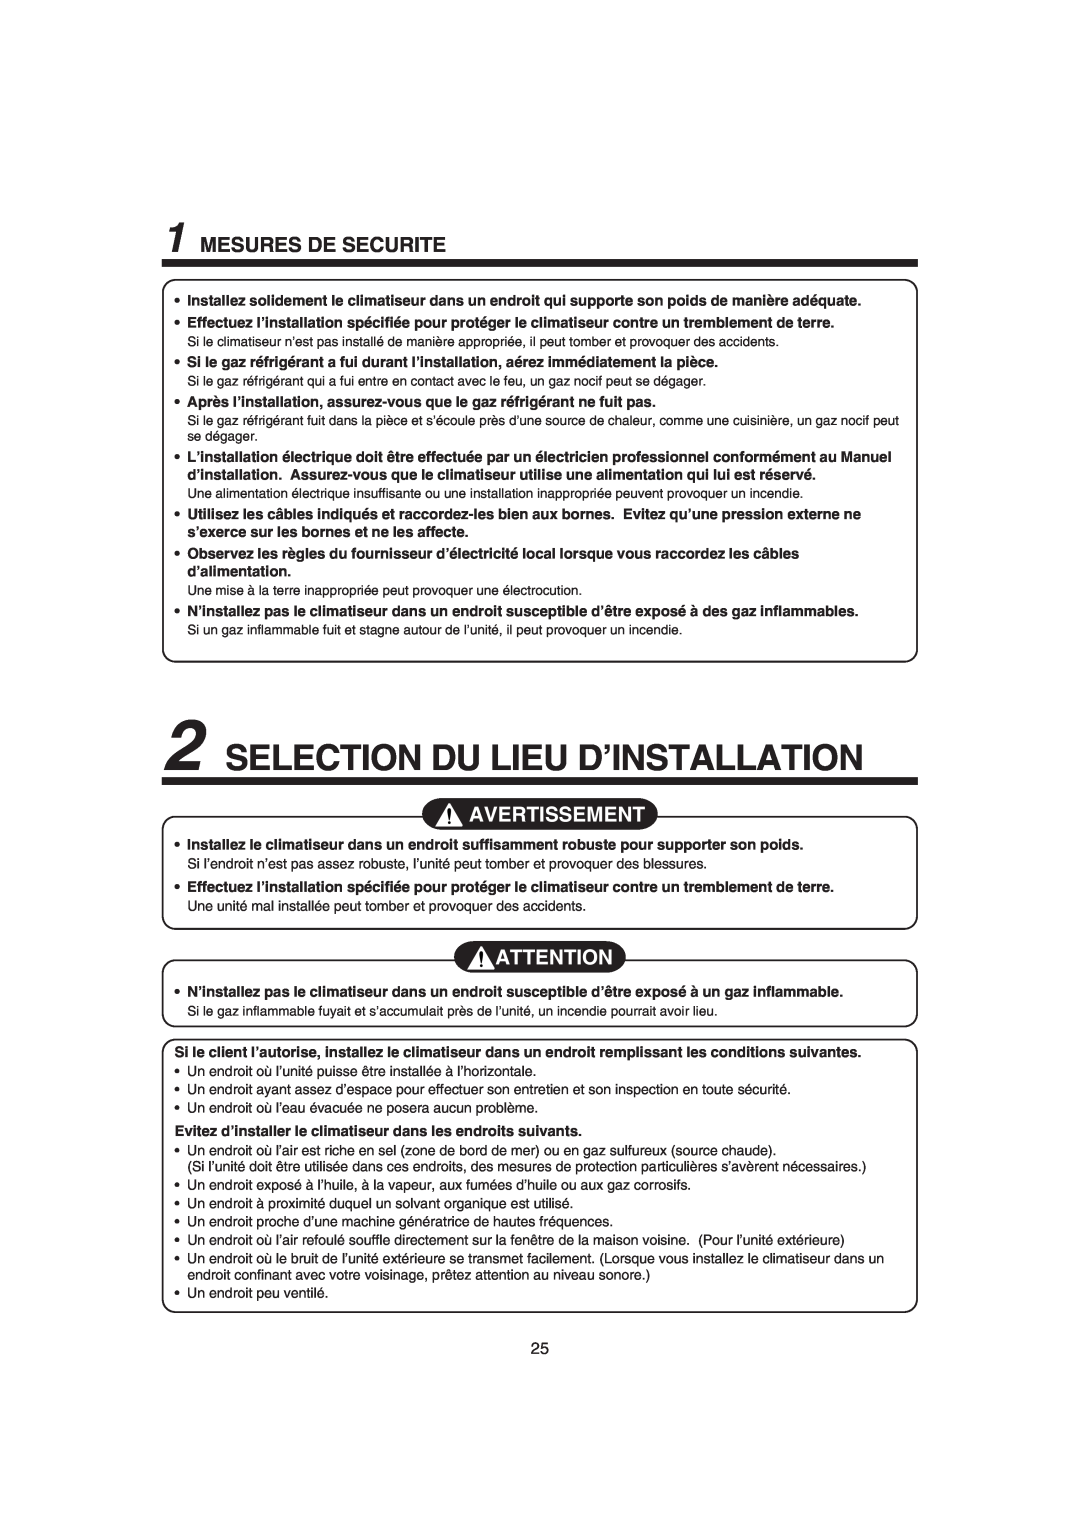 Pentax MMK-AP0181H, MMK-AP0121H, MMK-AP0071H Selection Du Lieu D’Installation, Mesures De Securite, Avertissement 